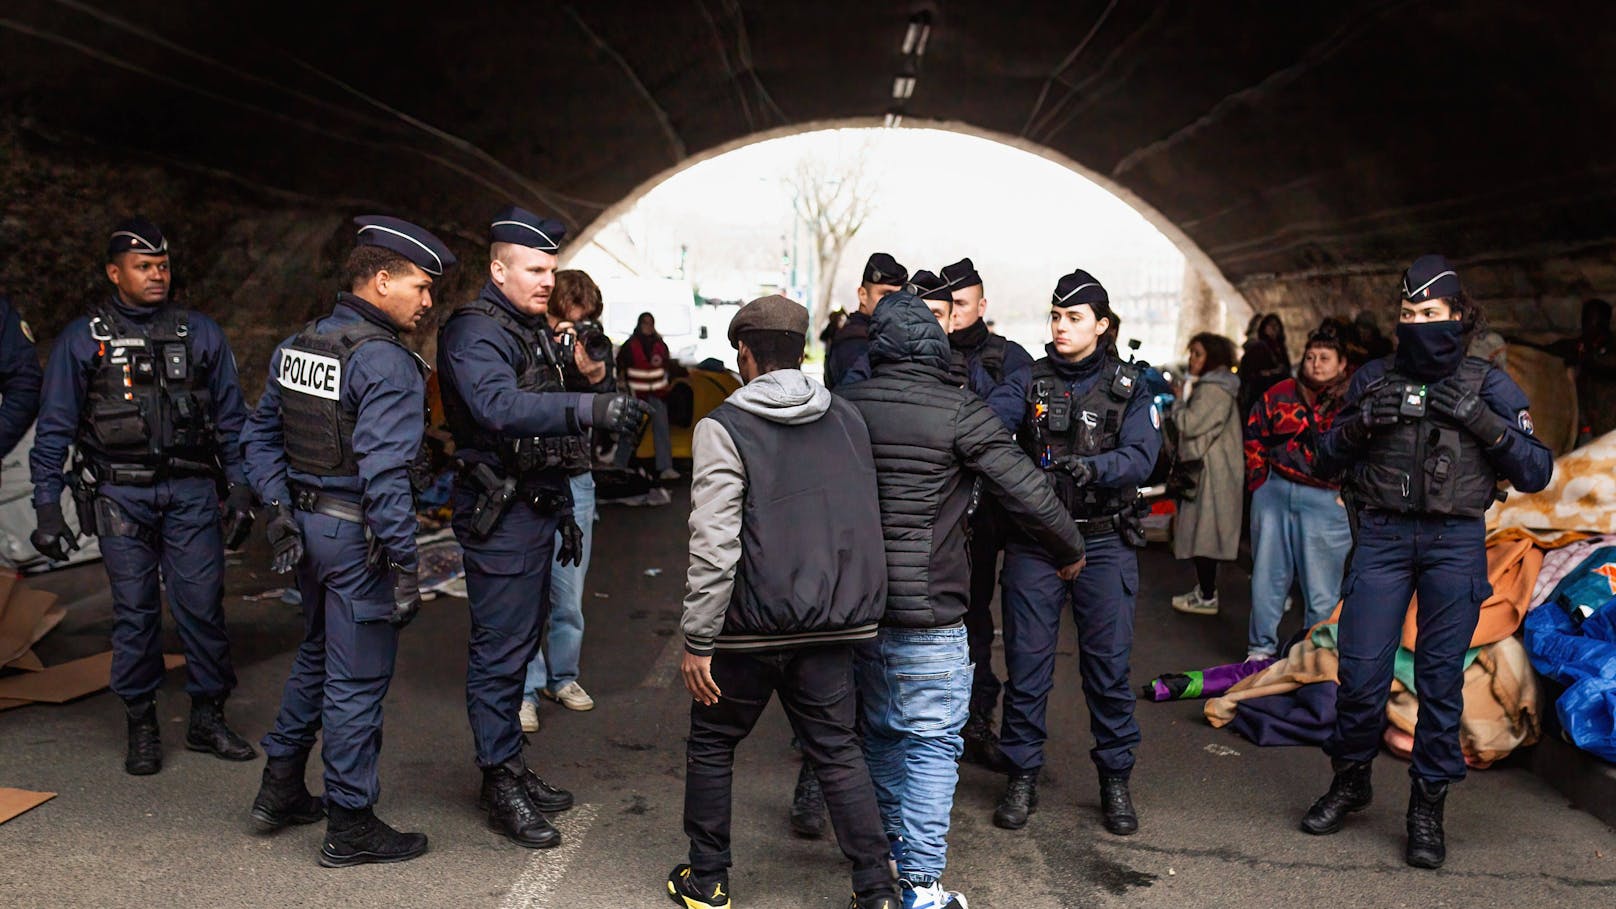 Polizeieinsatz am Ufer der Seine am 6. März dieses Jahres - rund 400 Obdachlose, überwiegend Migranten, werden offiziell wegen Hochwassergefahr evakuiert.